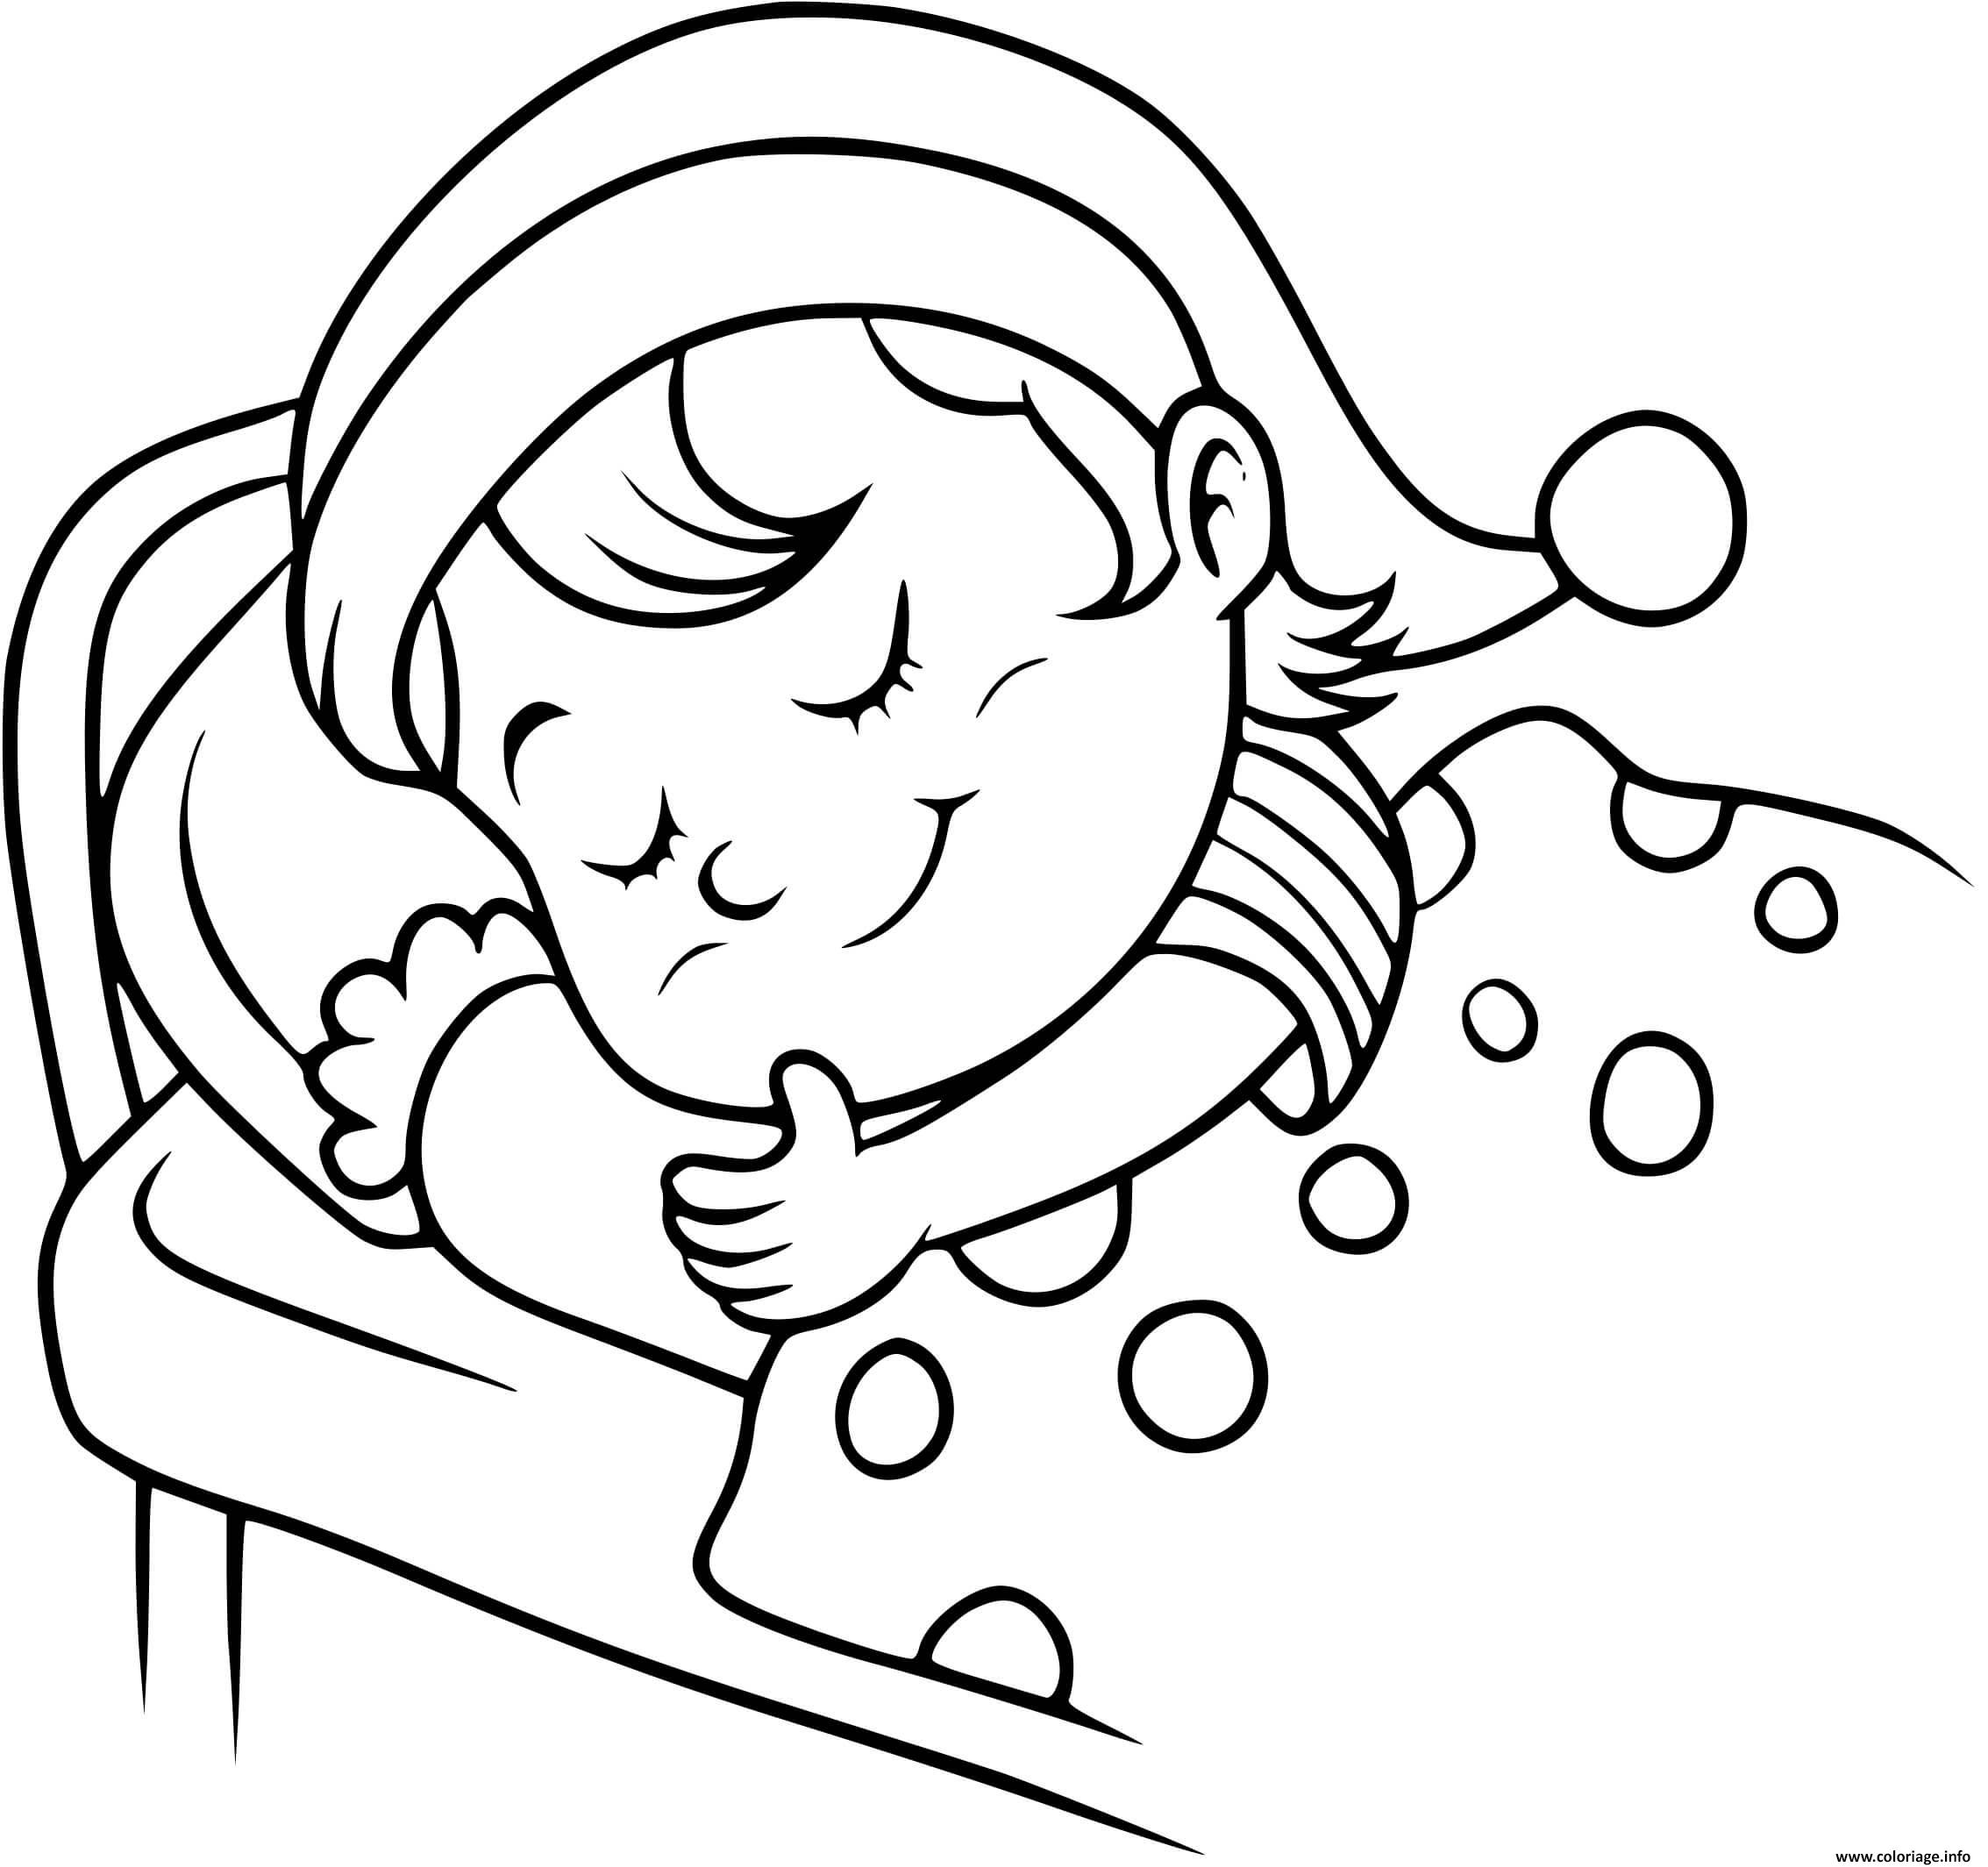 Coloriage bébé qui dort 2 - Dessin gratuit à imprimer